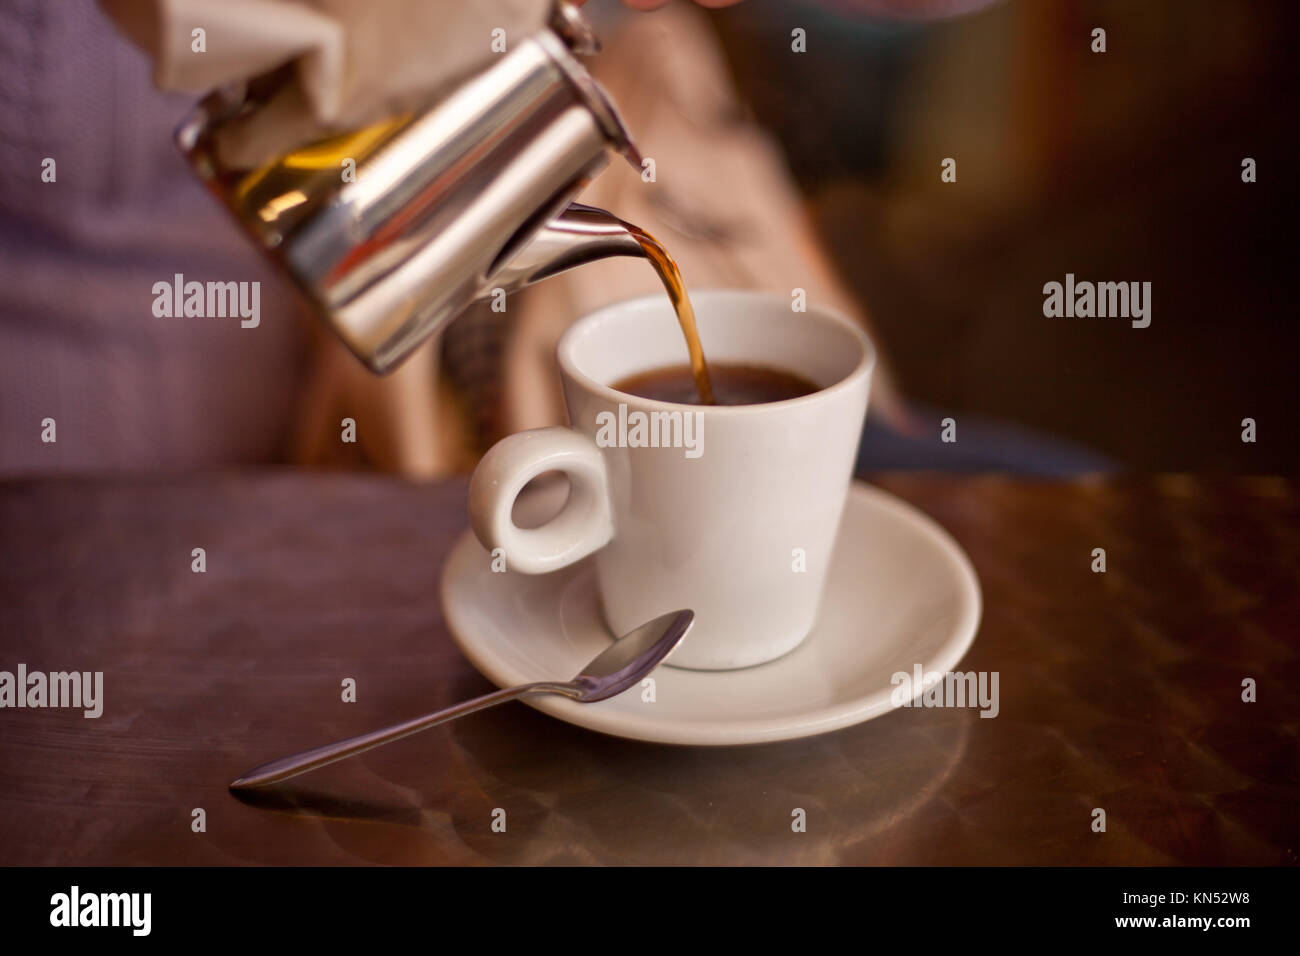 Serviert Tee aus einem Metall teapont in eine weiße Keramik Tasse auf Restaurant Terrasse Tisch. Selektive konzentrieren. Stockfoto